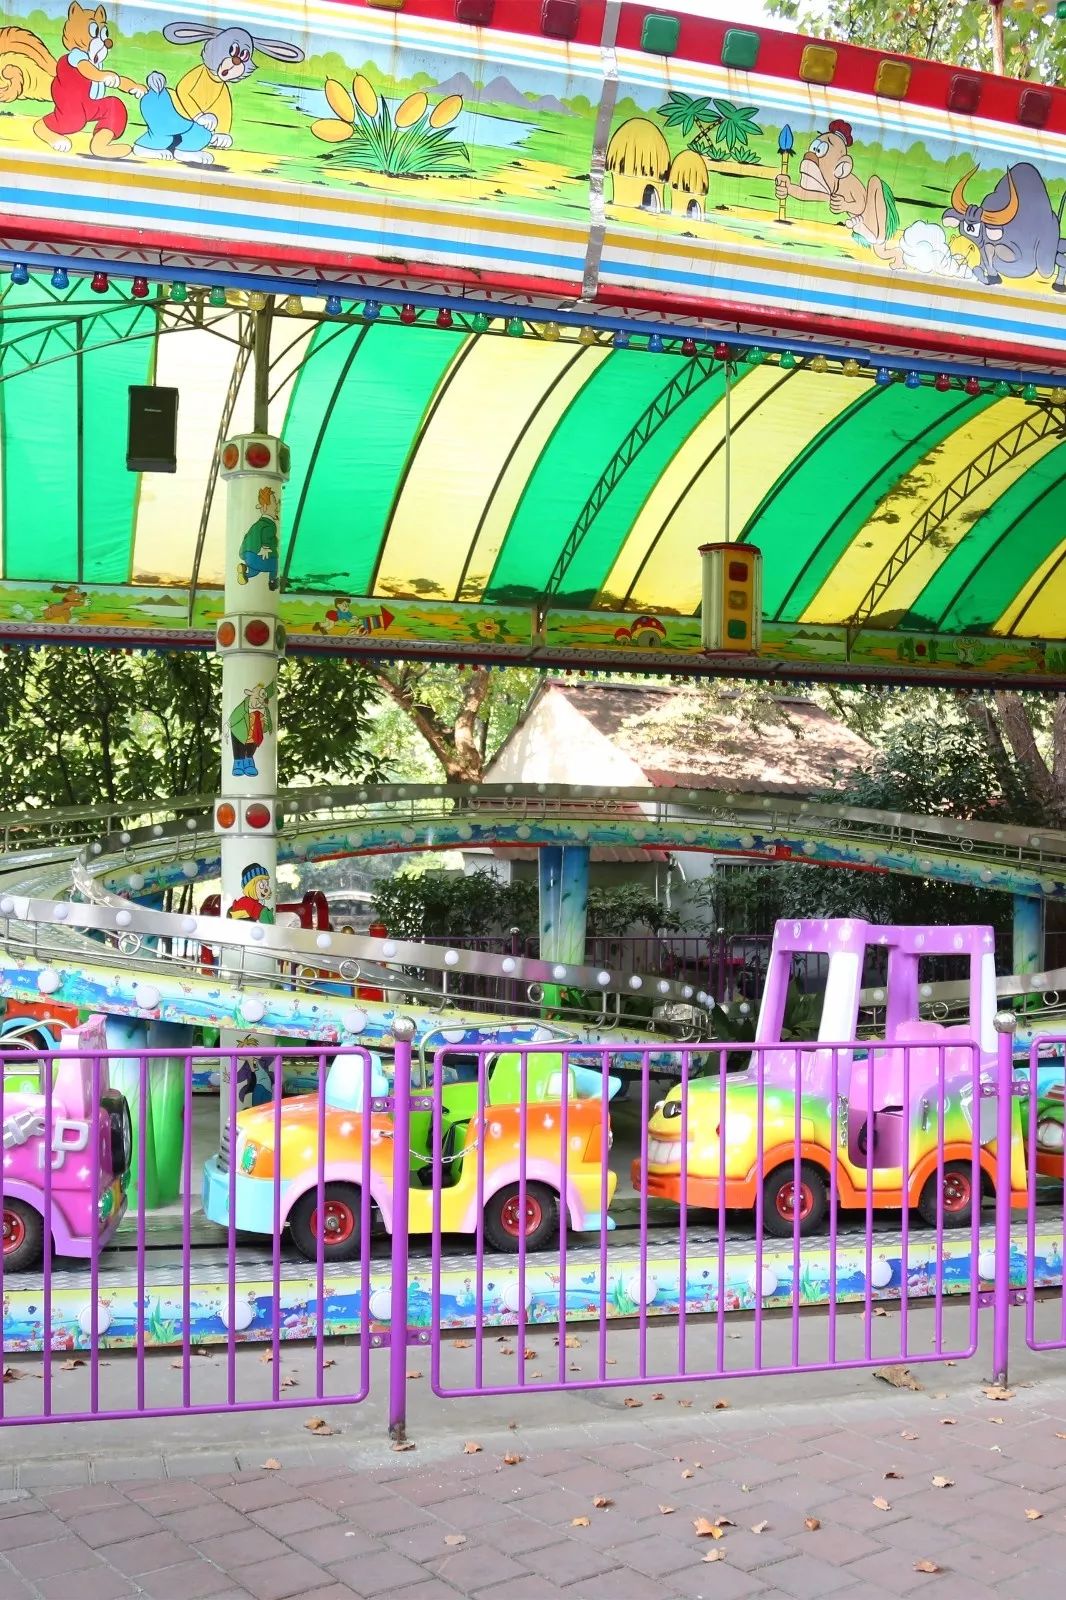 鲁迅公园游乐场项目图片